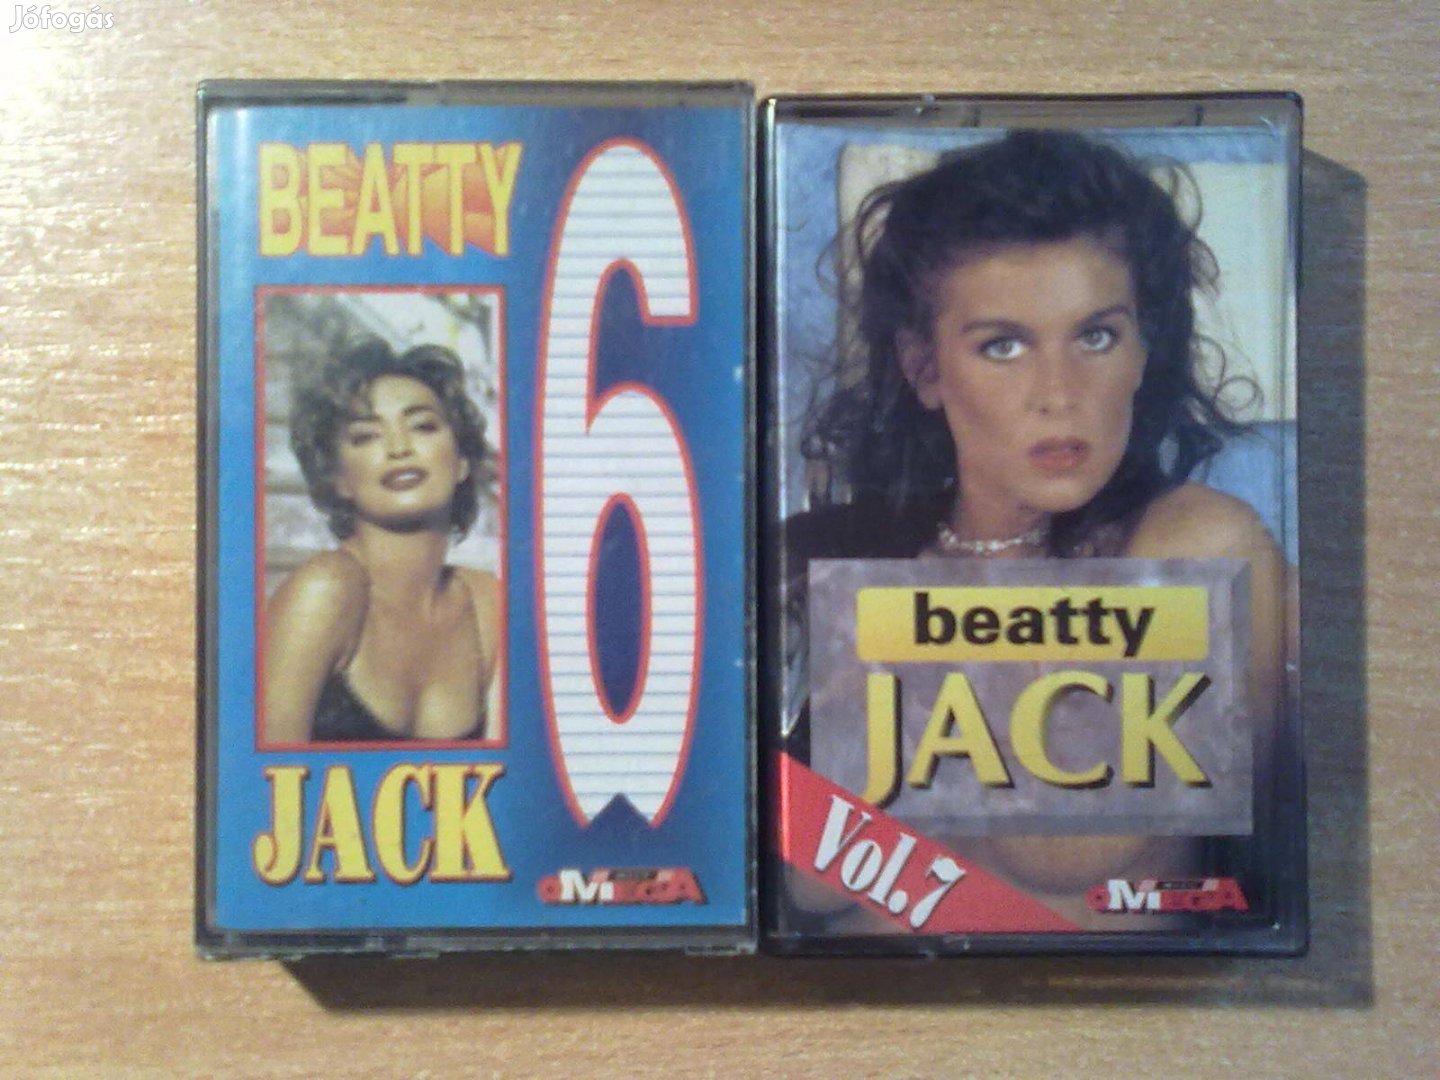 Beatty Jack Vol.6 és Vol.7 (Unofficial Release)